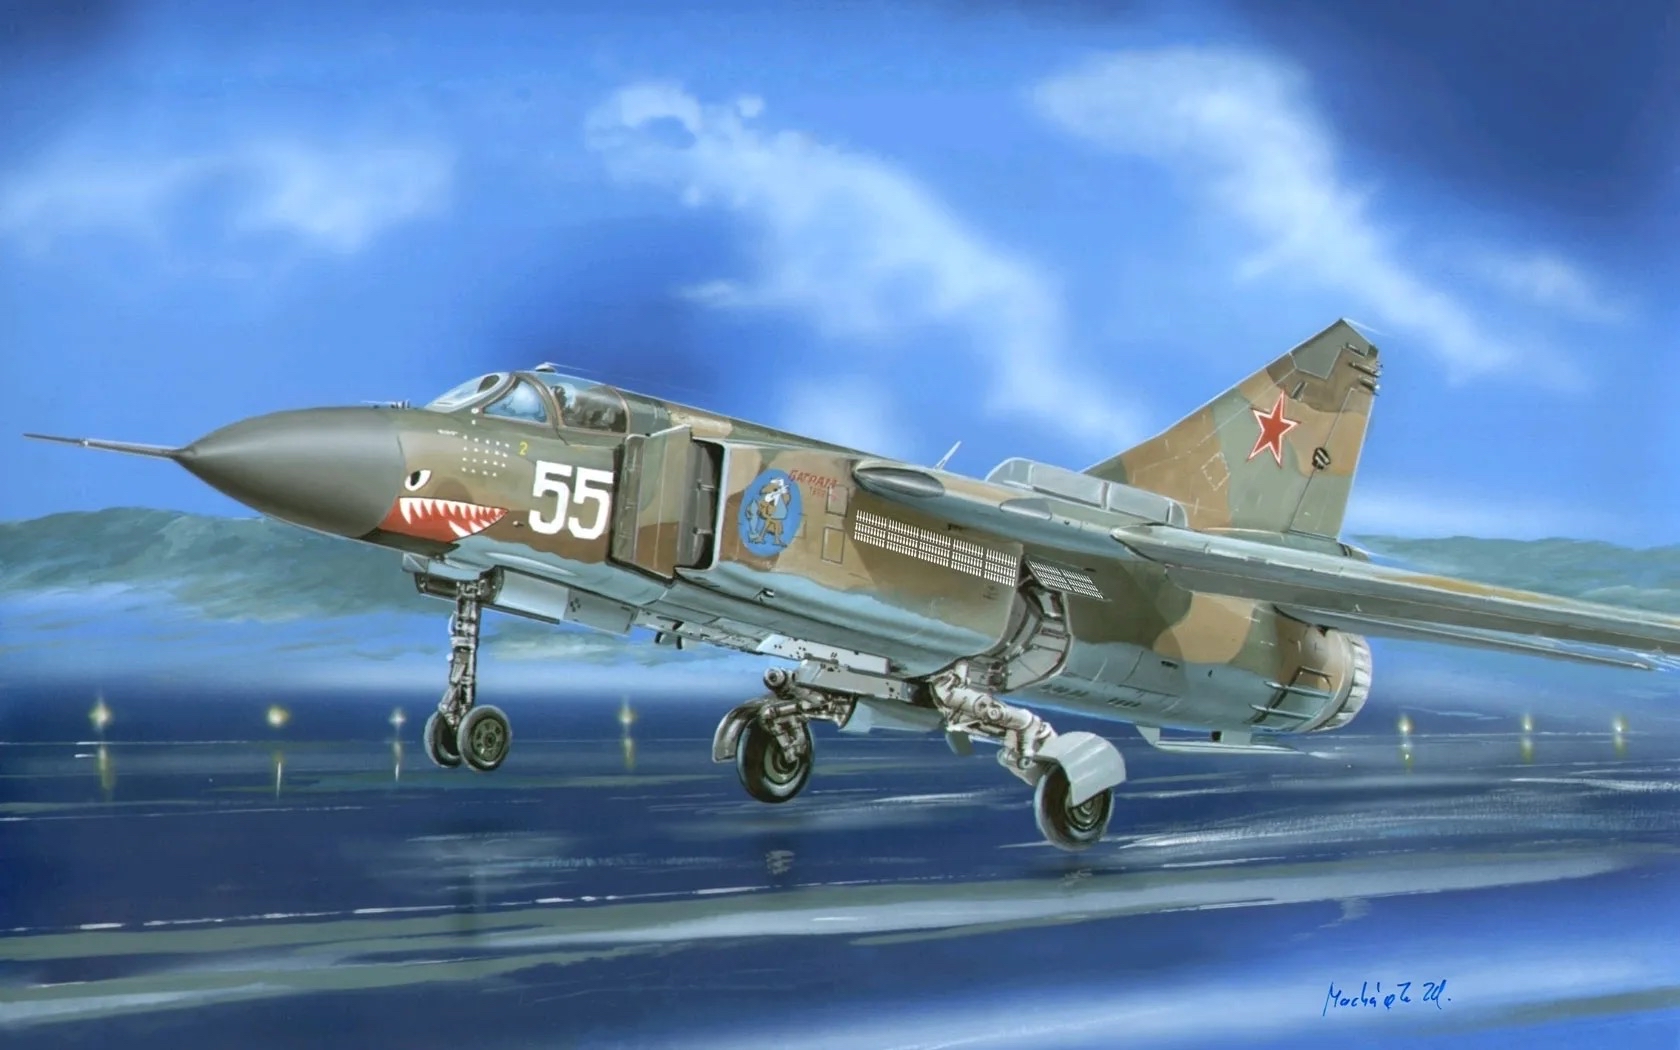 应对越南威胁,在苏联人眼皮底下,中国从埃及偷运回一架米格23